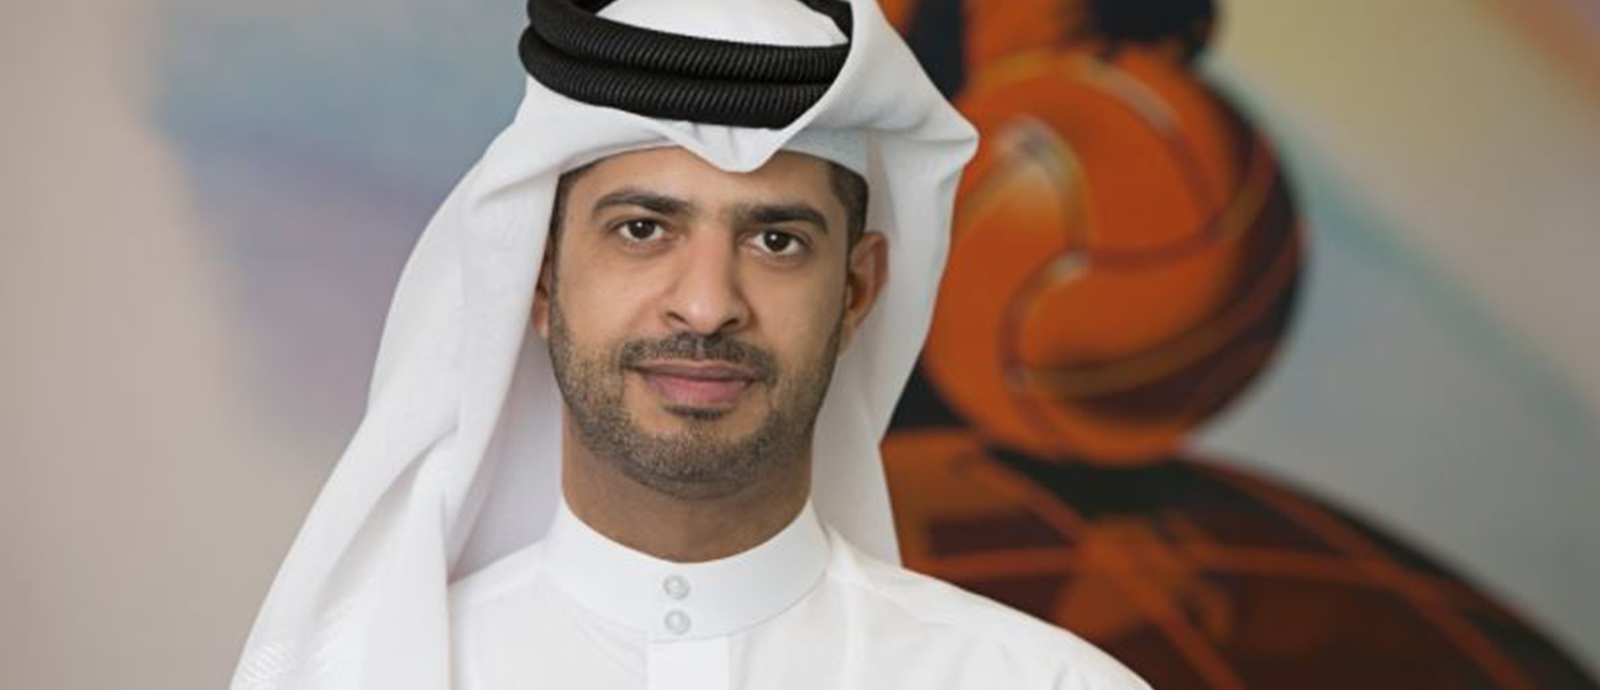 السيد ناصر الخاطر، الرئيس التنفيذي لبطولة كأس العالم FIFA قطر 2022™،